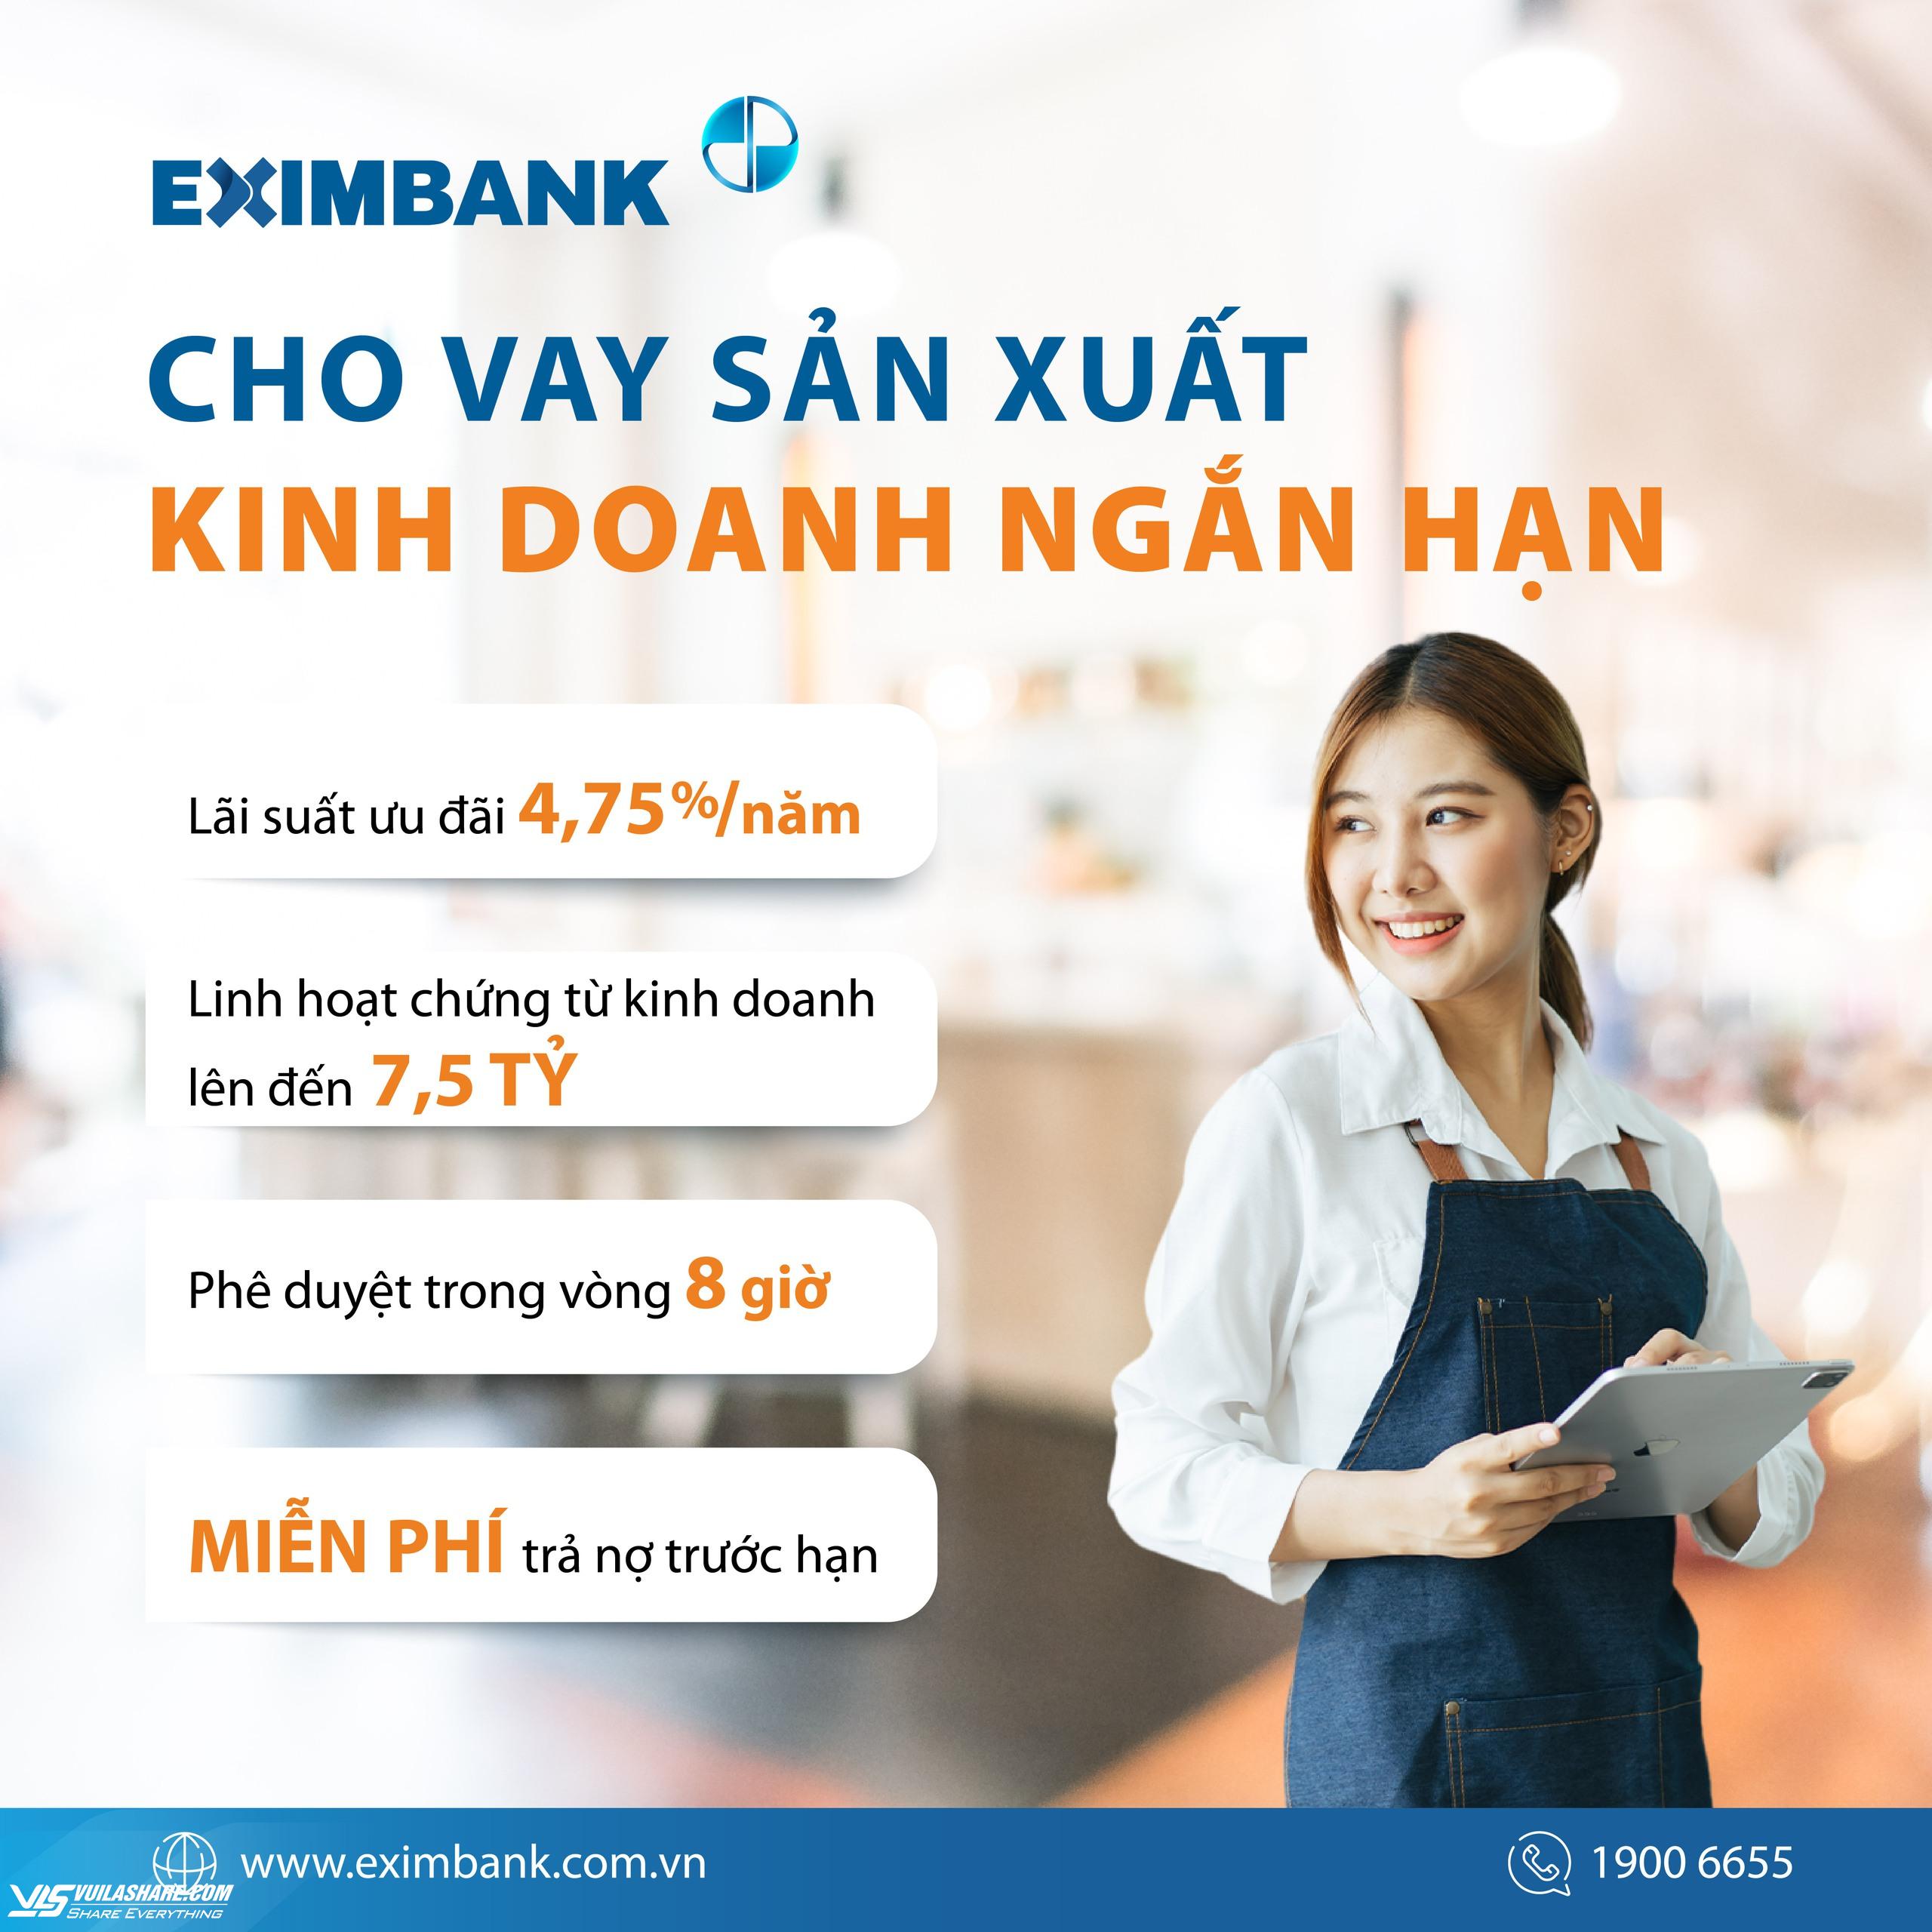 Eximbank tung loạt chương trình siêu ưu đãi lớn trong năm - Ảnh 2.